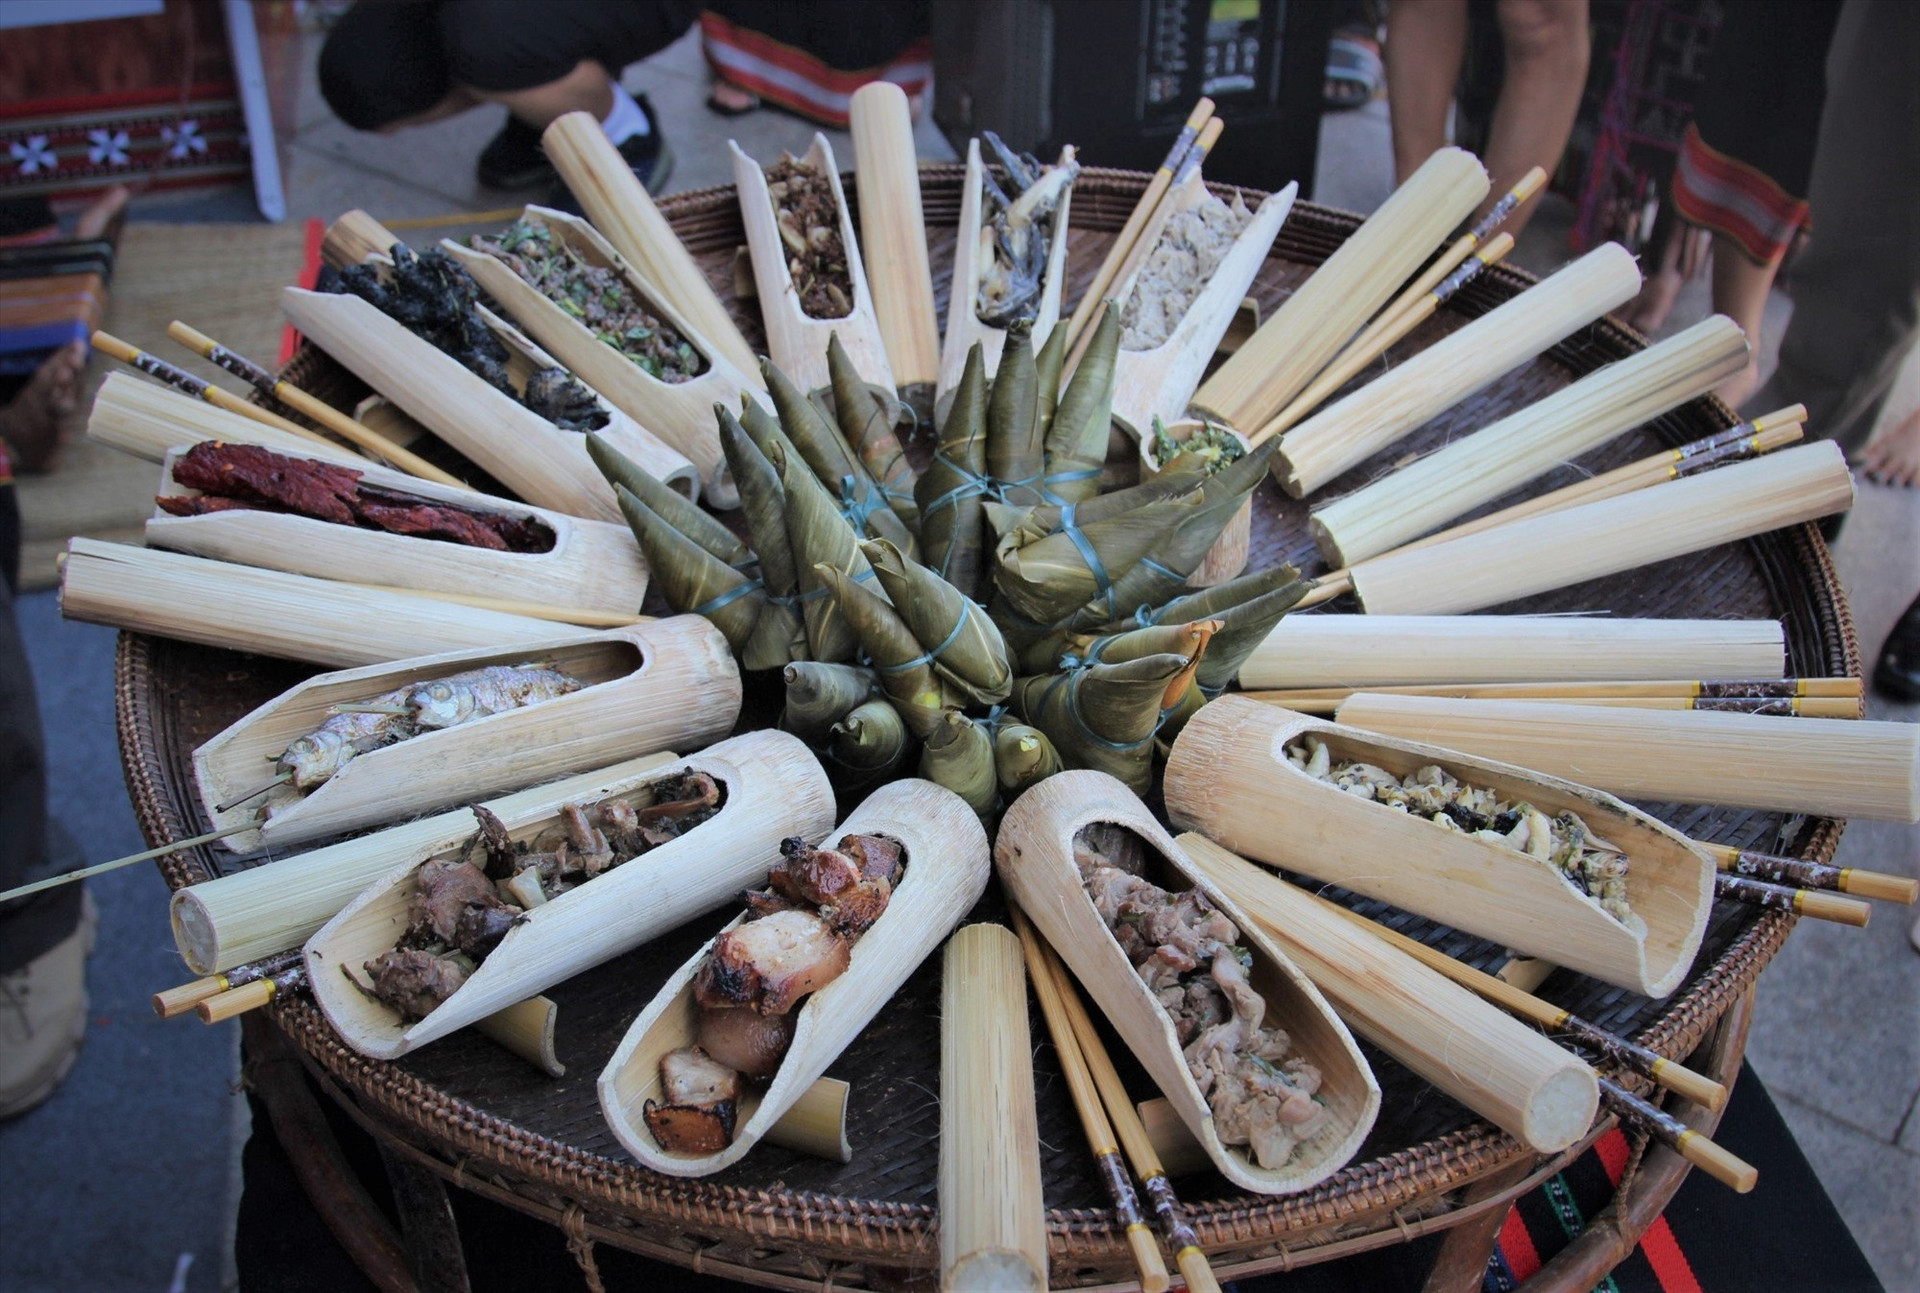 Ẩm thực truyền thống của đồng bào vùng cao Quảng Nam được trưng ngày tại ngày hội. Ảnh: CTV